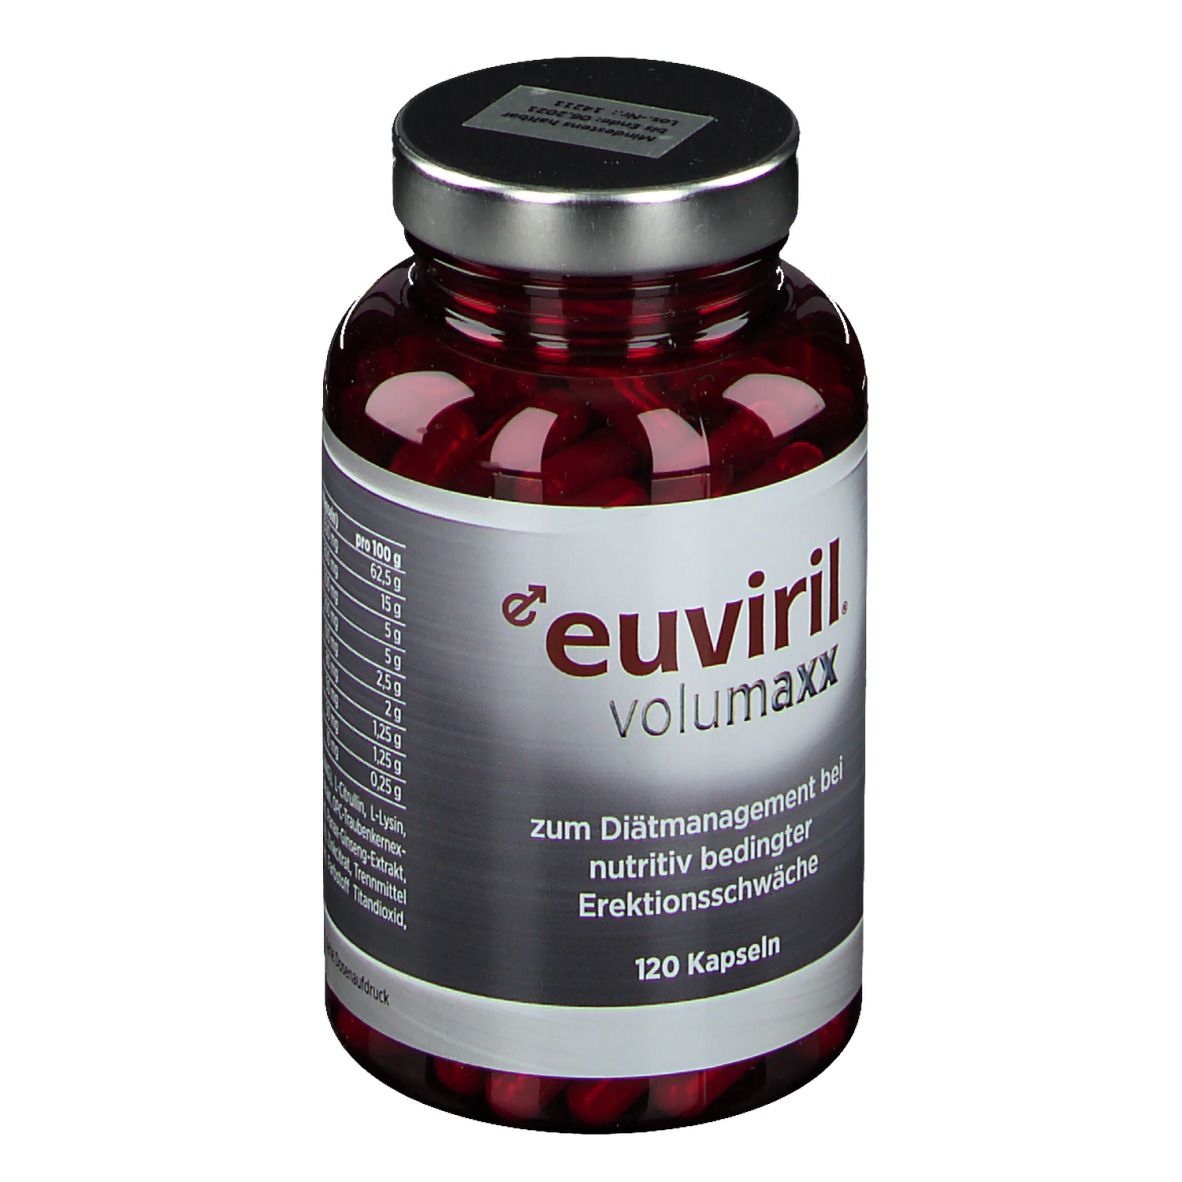 euviril® volumaxx